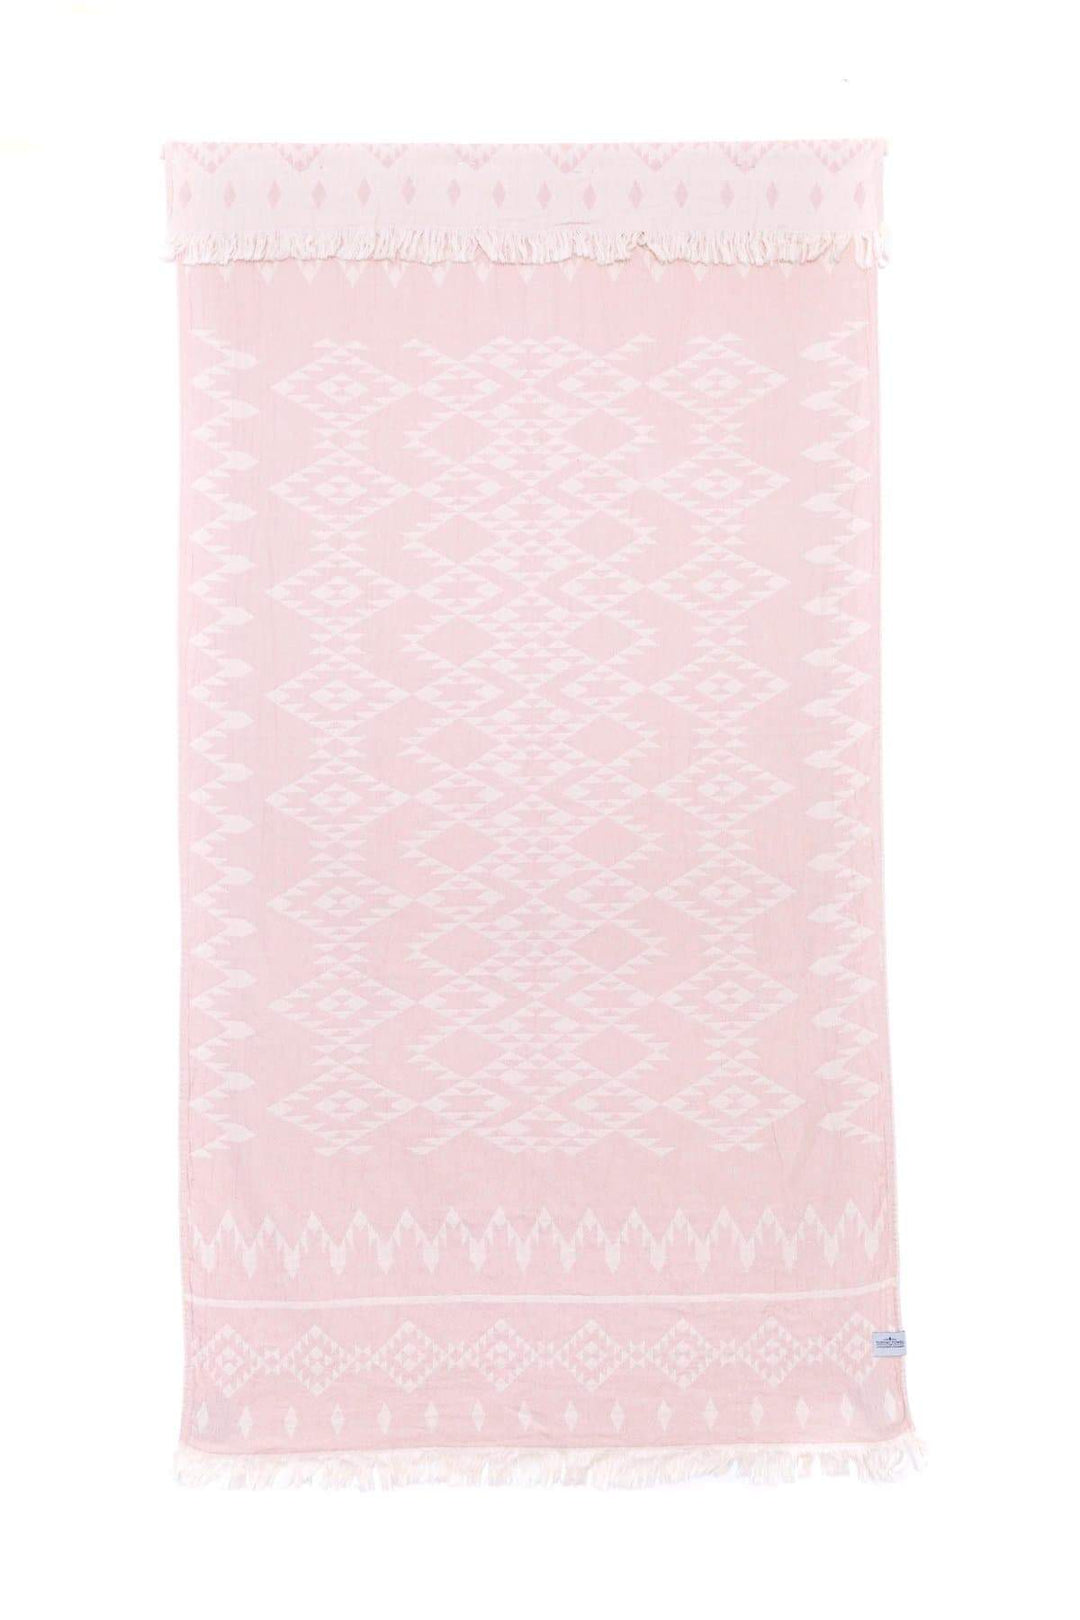 Tofino Towels Towel Rose Smoke Tofino Towels | THE COASTAL TOWEL SERIES